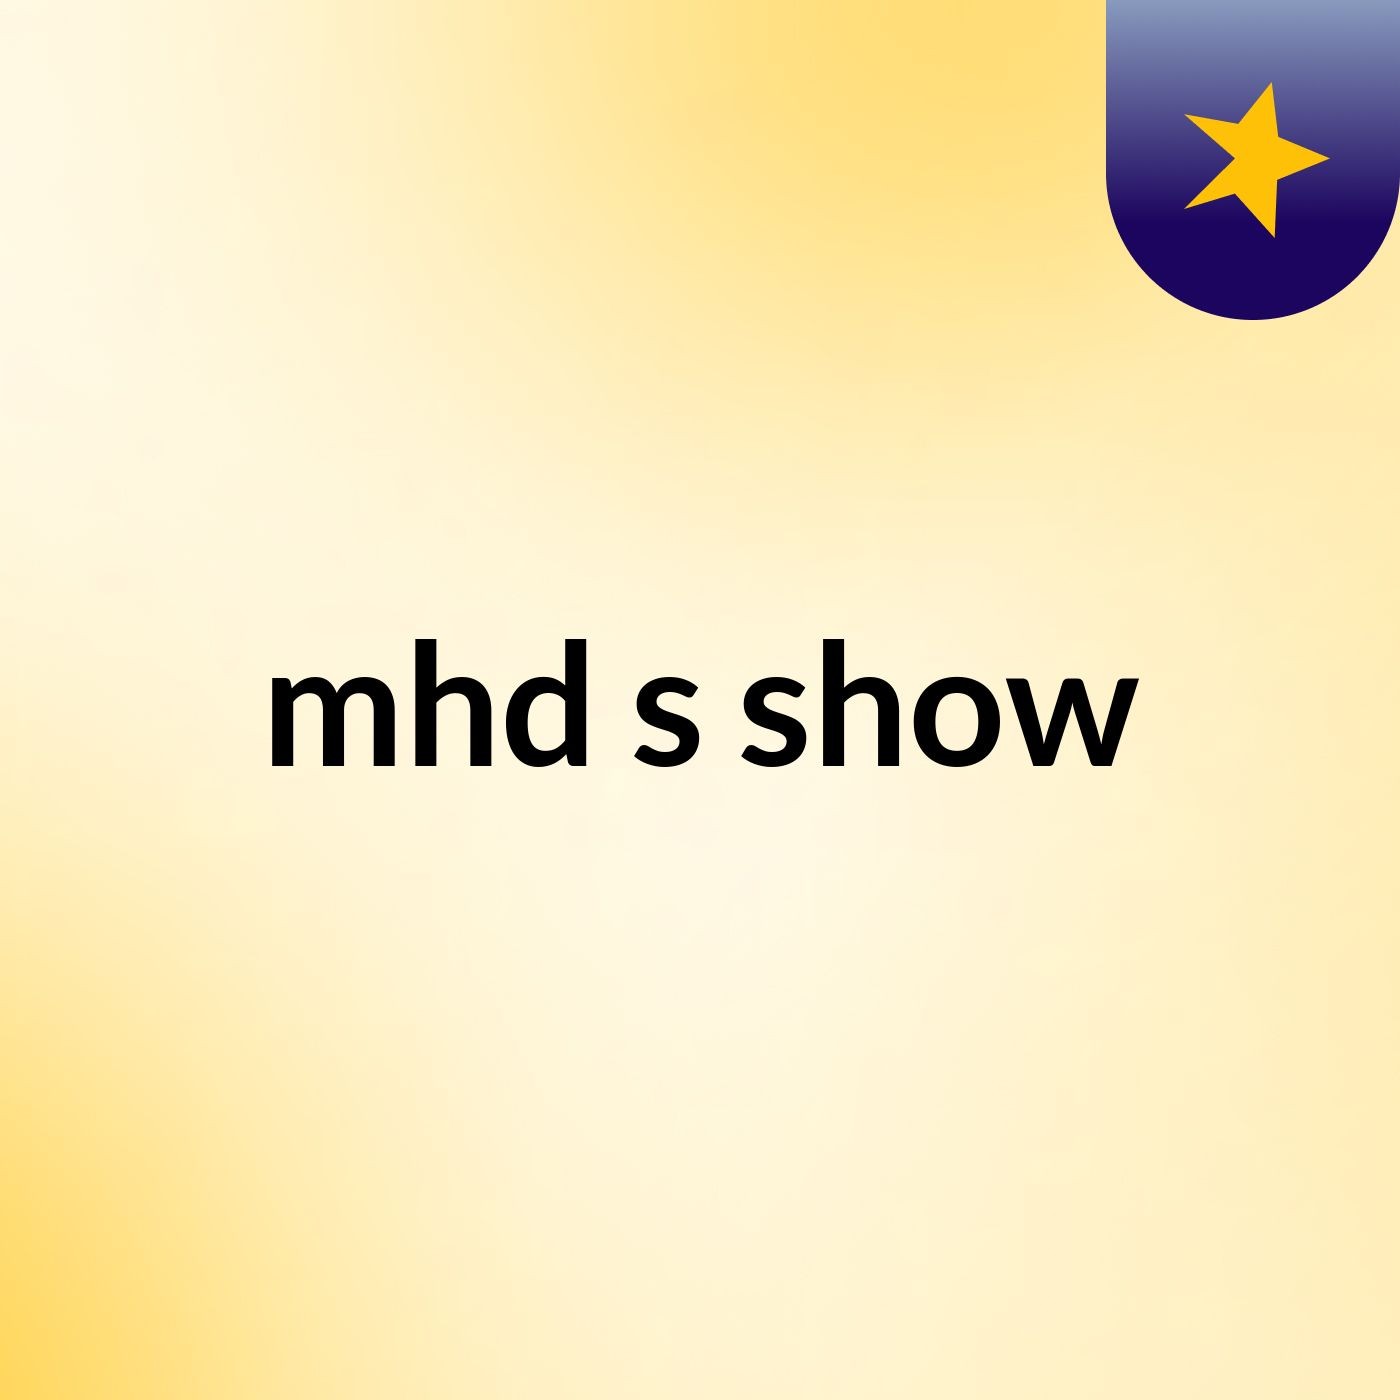 mhd's show